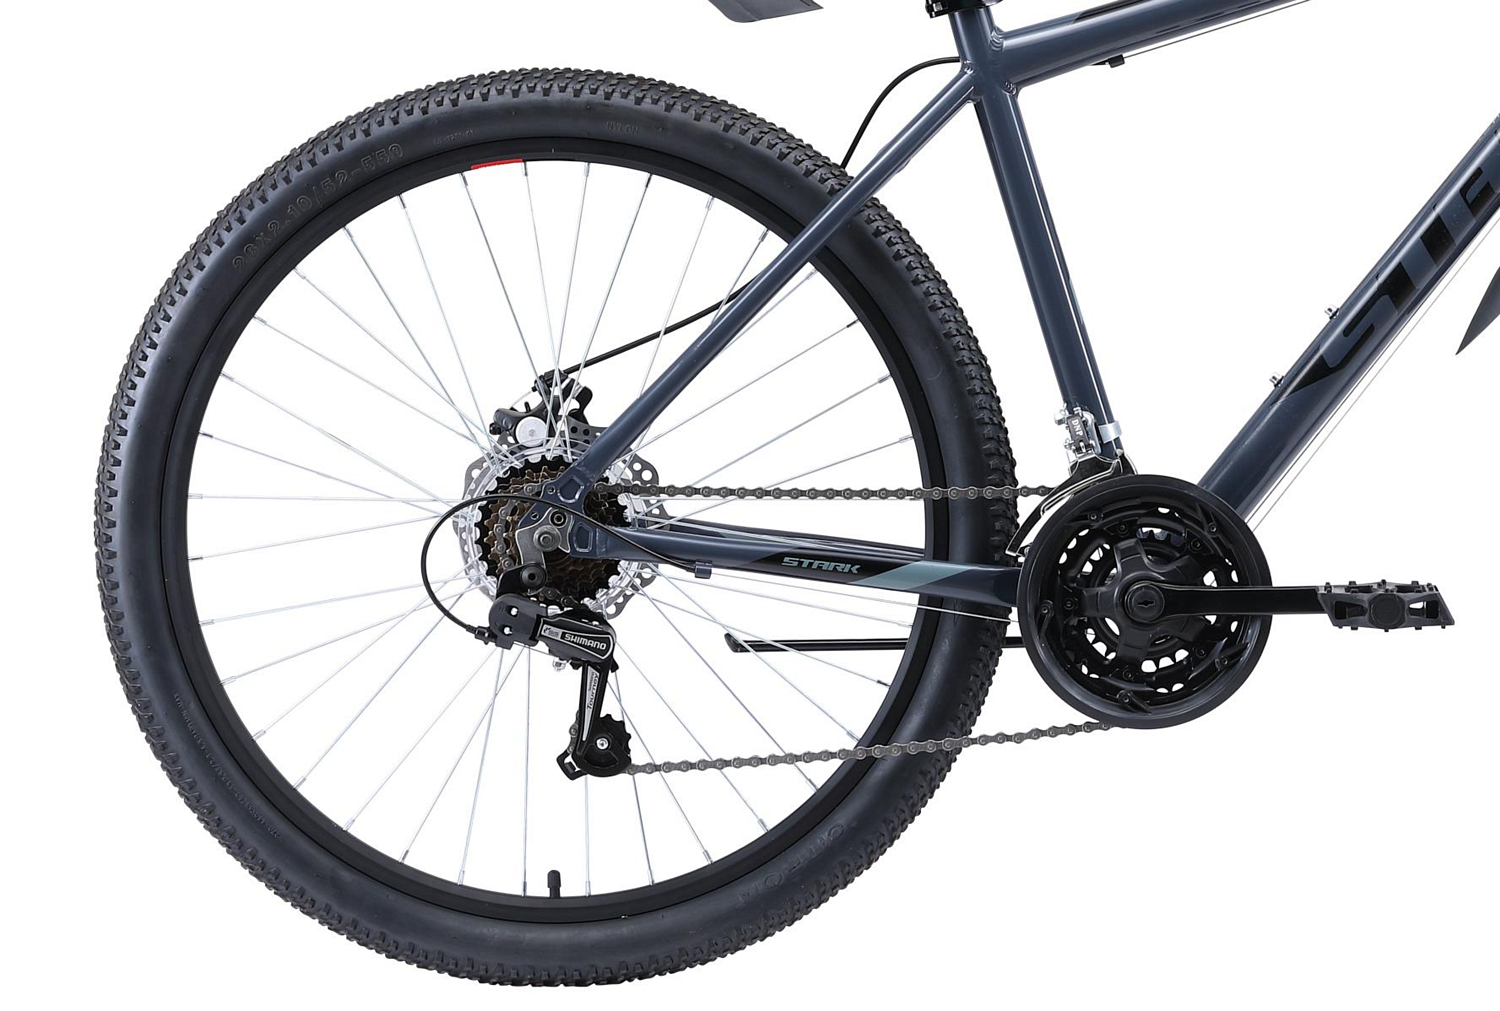 Велосипед Stark Outpost 26.1 D 2020 серый/черный